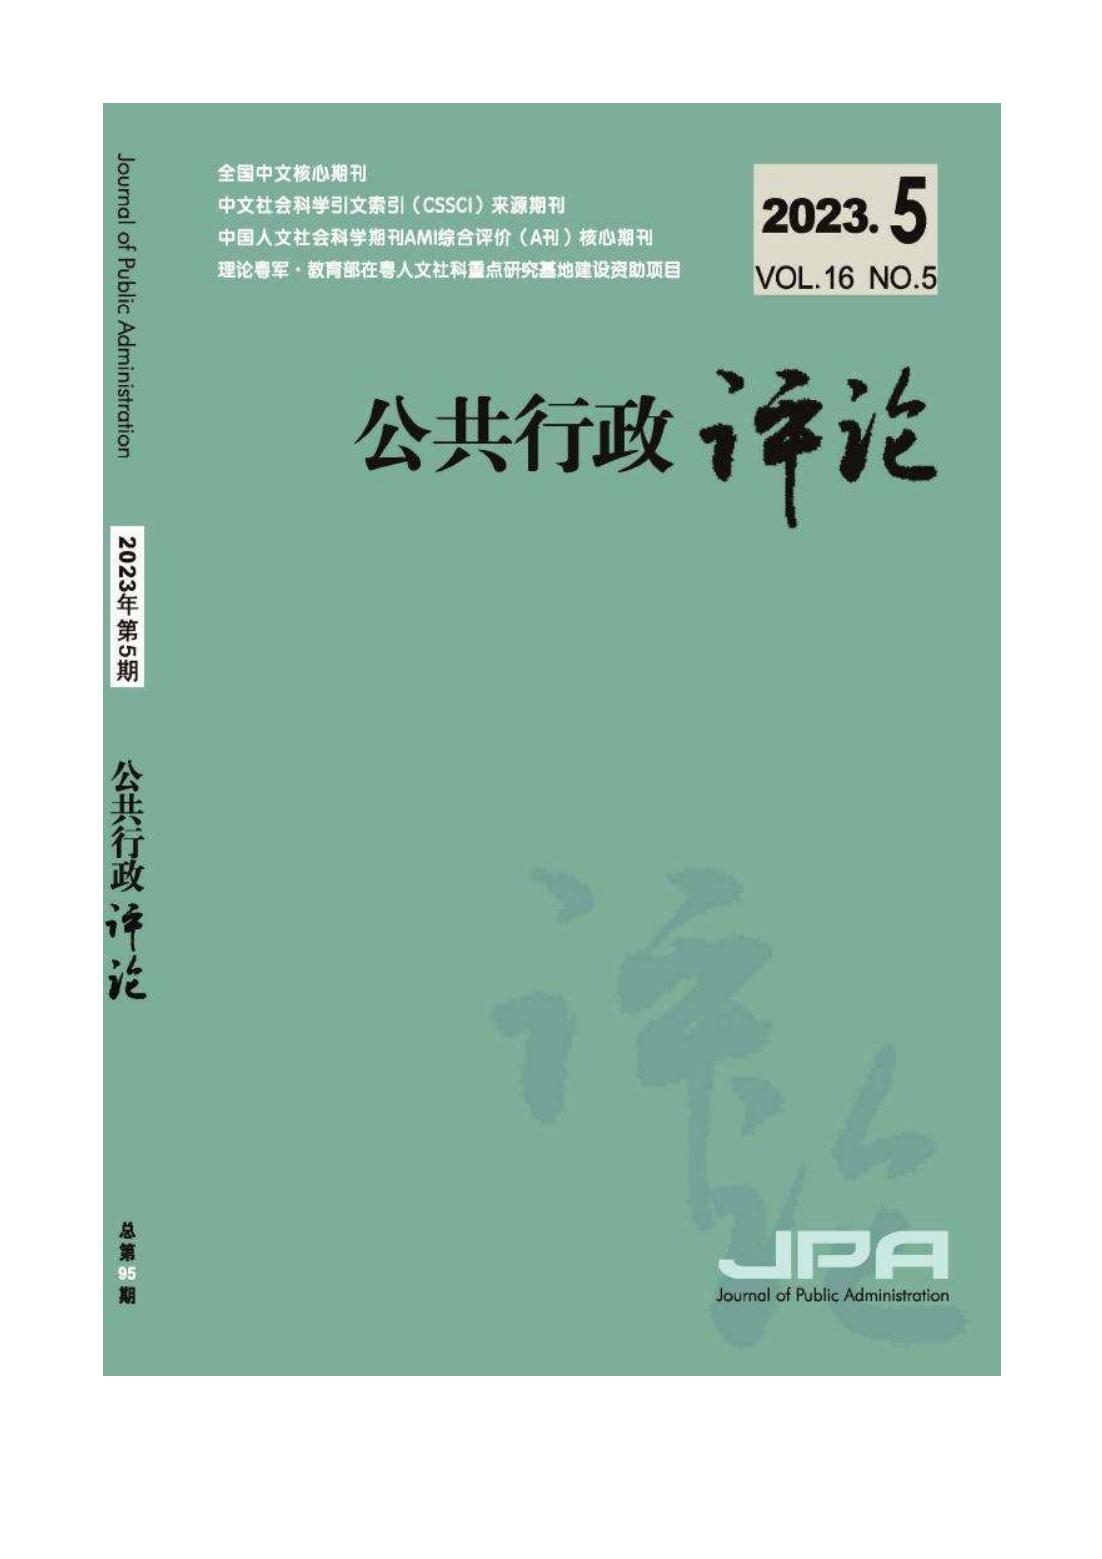 殷昊、林奇富：《窄播时代的政治传播：中国传统媒体的挑战及其应对策略》，《公共行政评论》2023年第5期